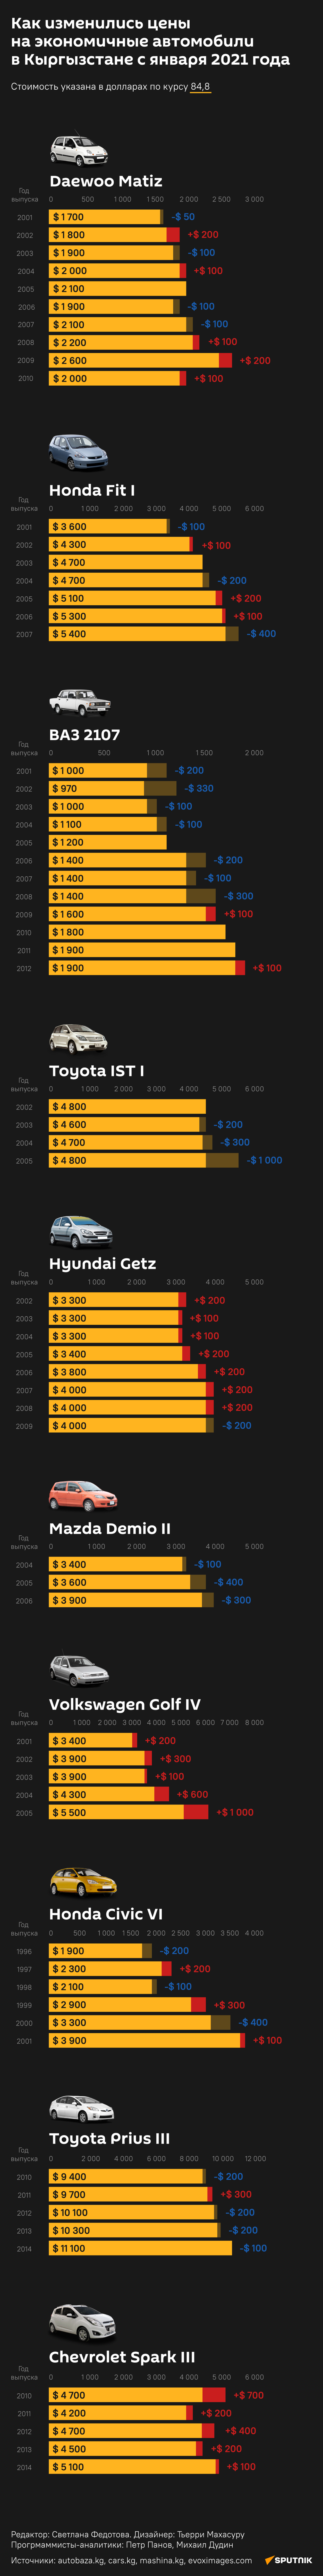 Как изменились цены  на экономичные автомобили  в Кыргызстане с января 2021 года - Sputnik Кыргызстан, 1920, 24.04.2021